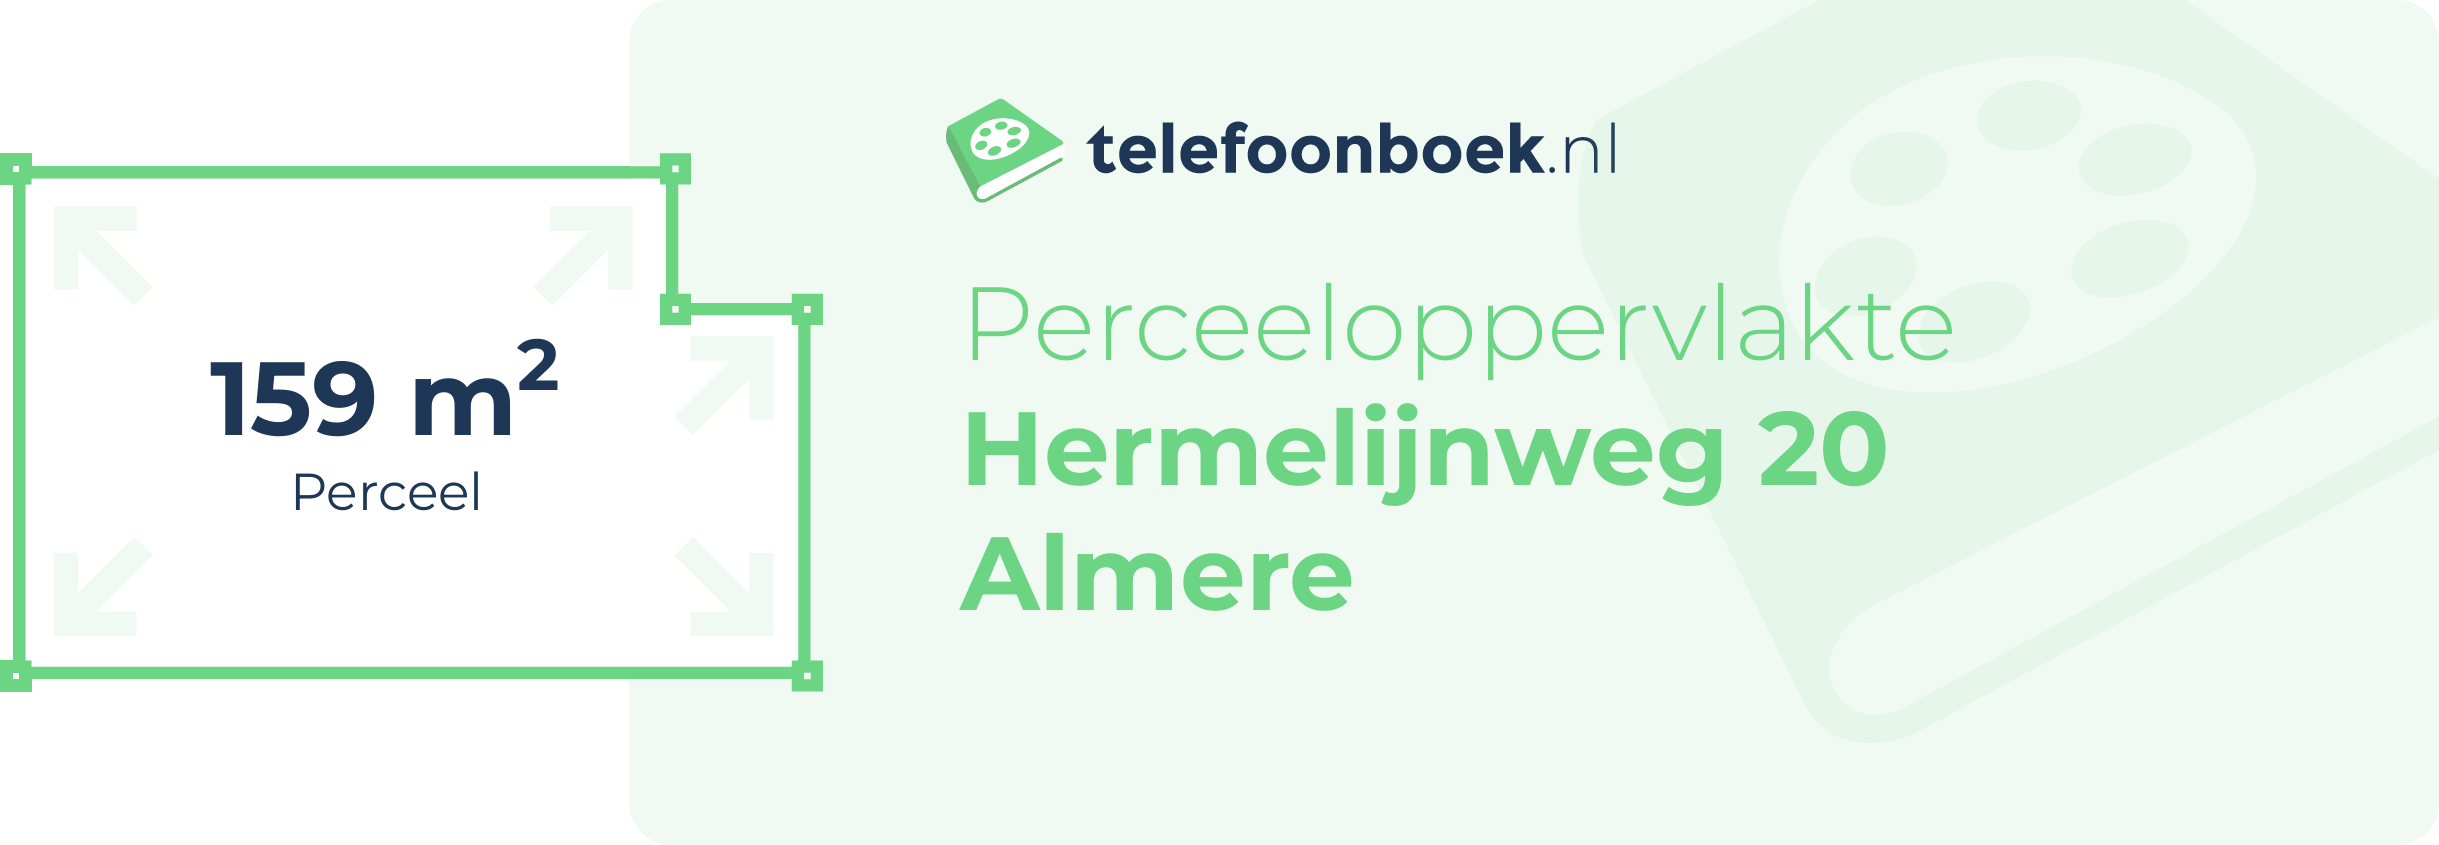 Perceeloppervlakte Hermelijnweg 20 Almere